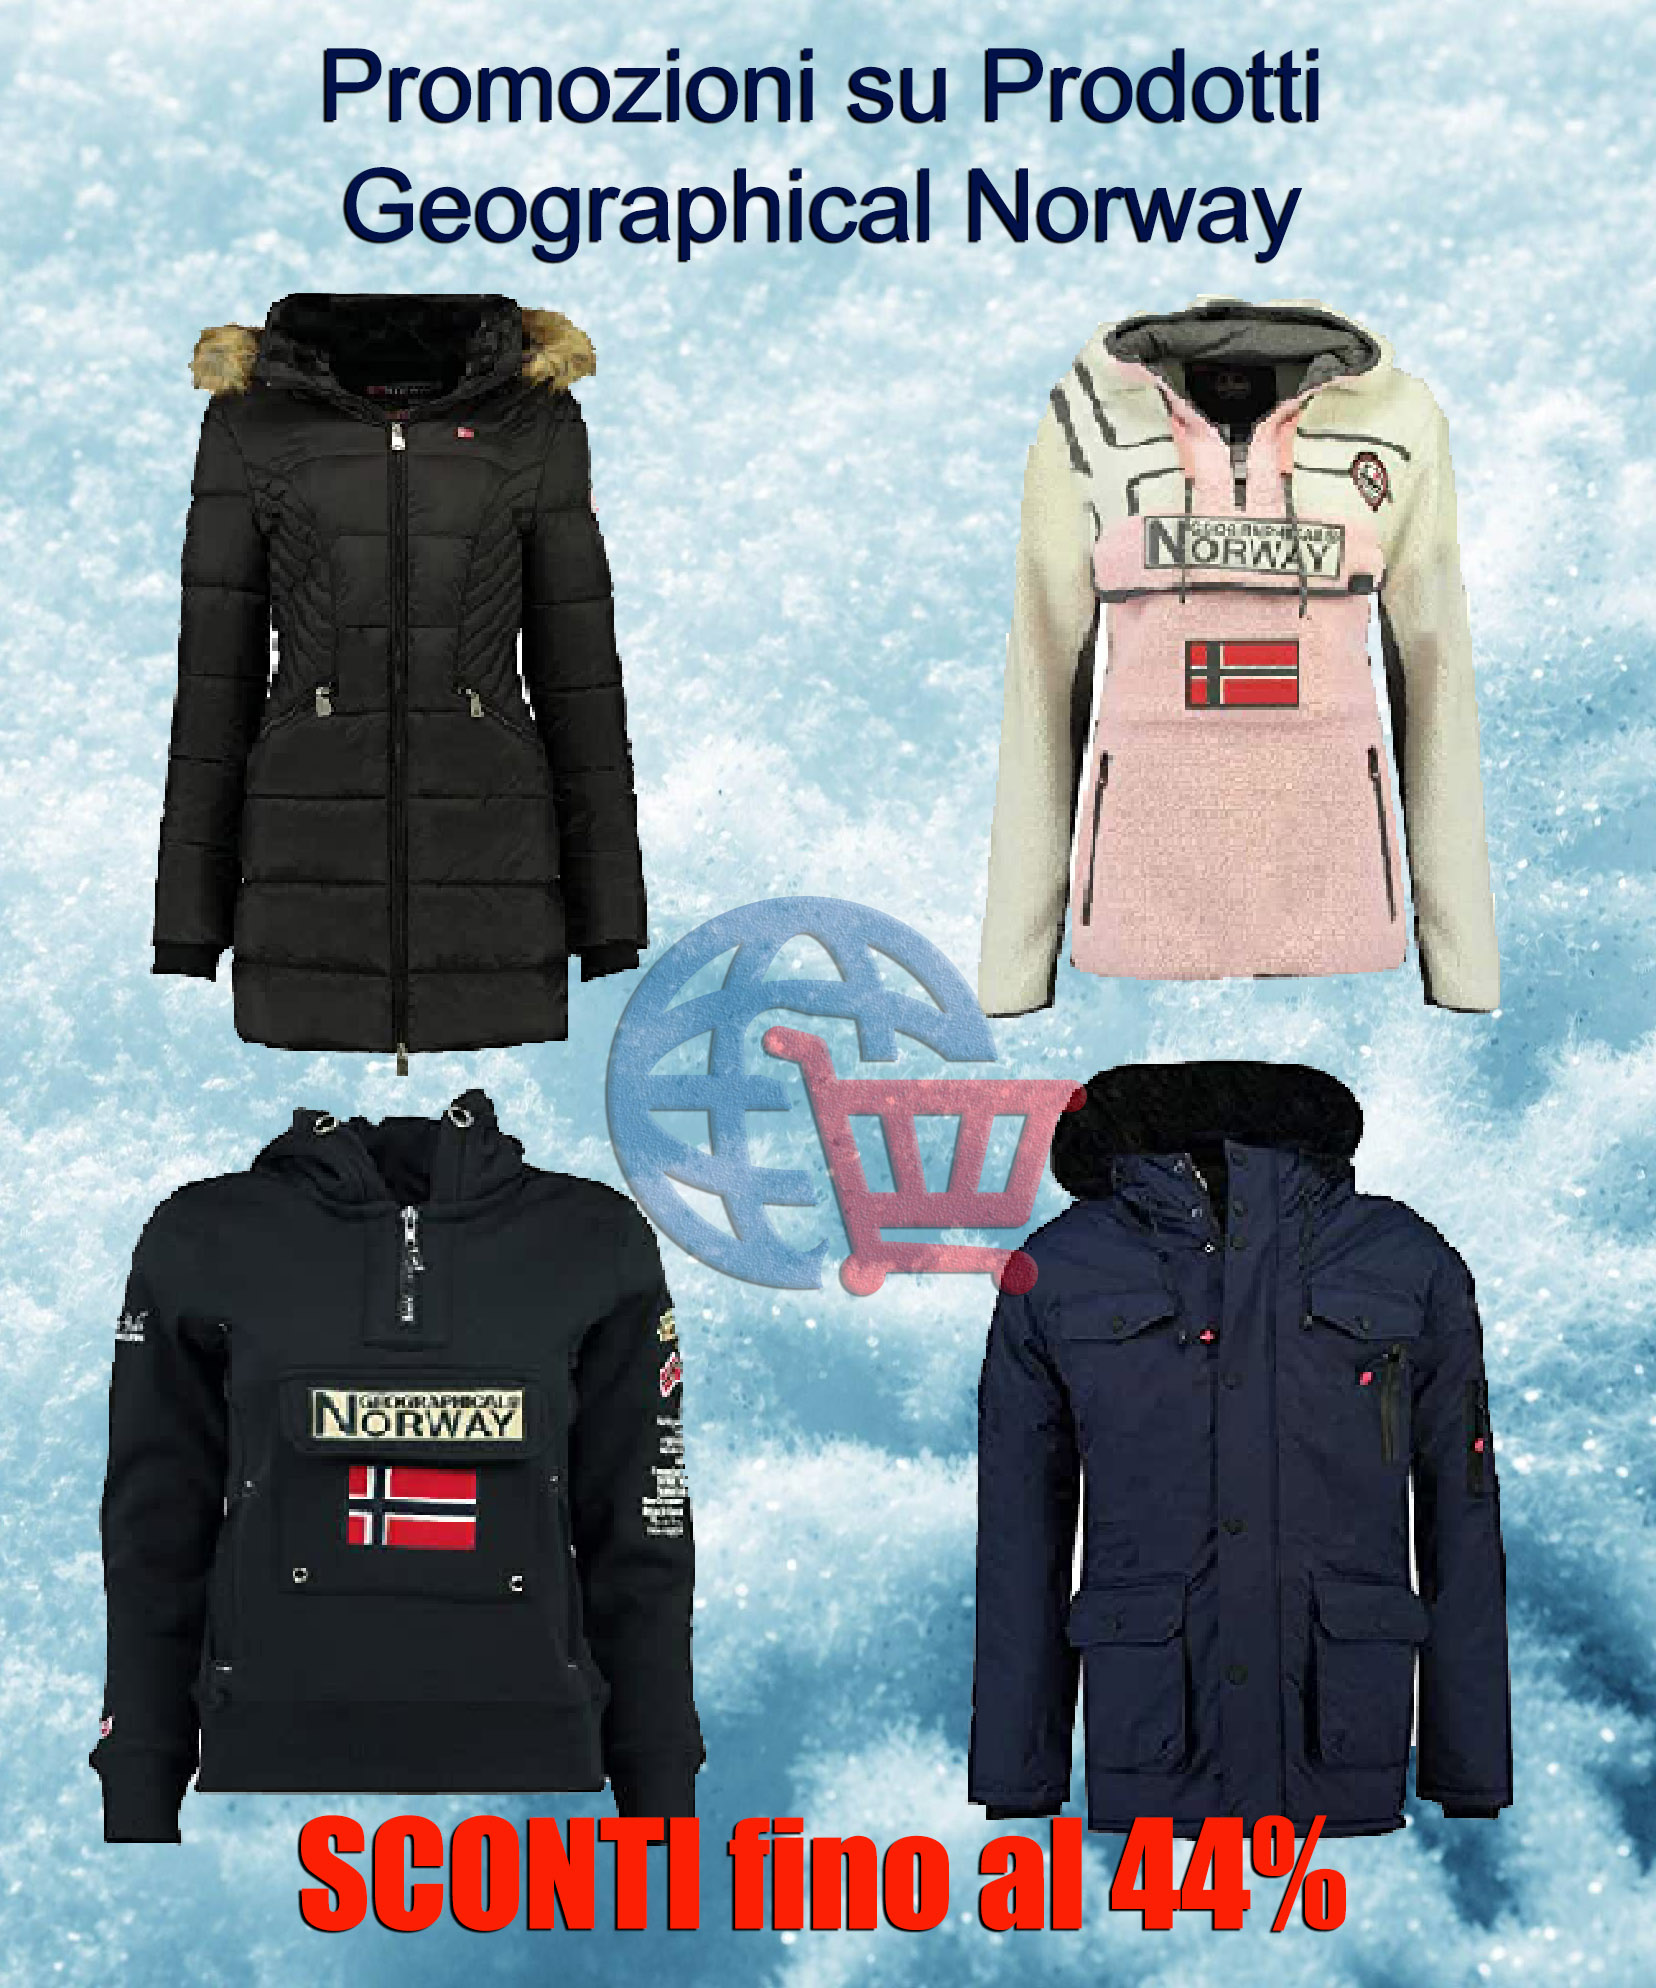 Promozioni su Prodotti Geographical Norway